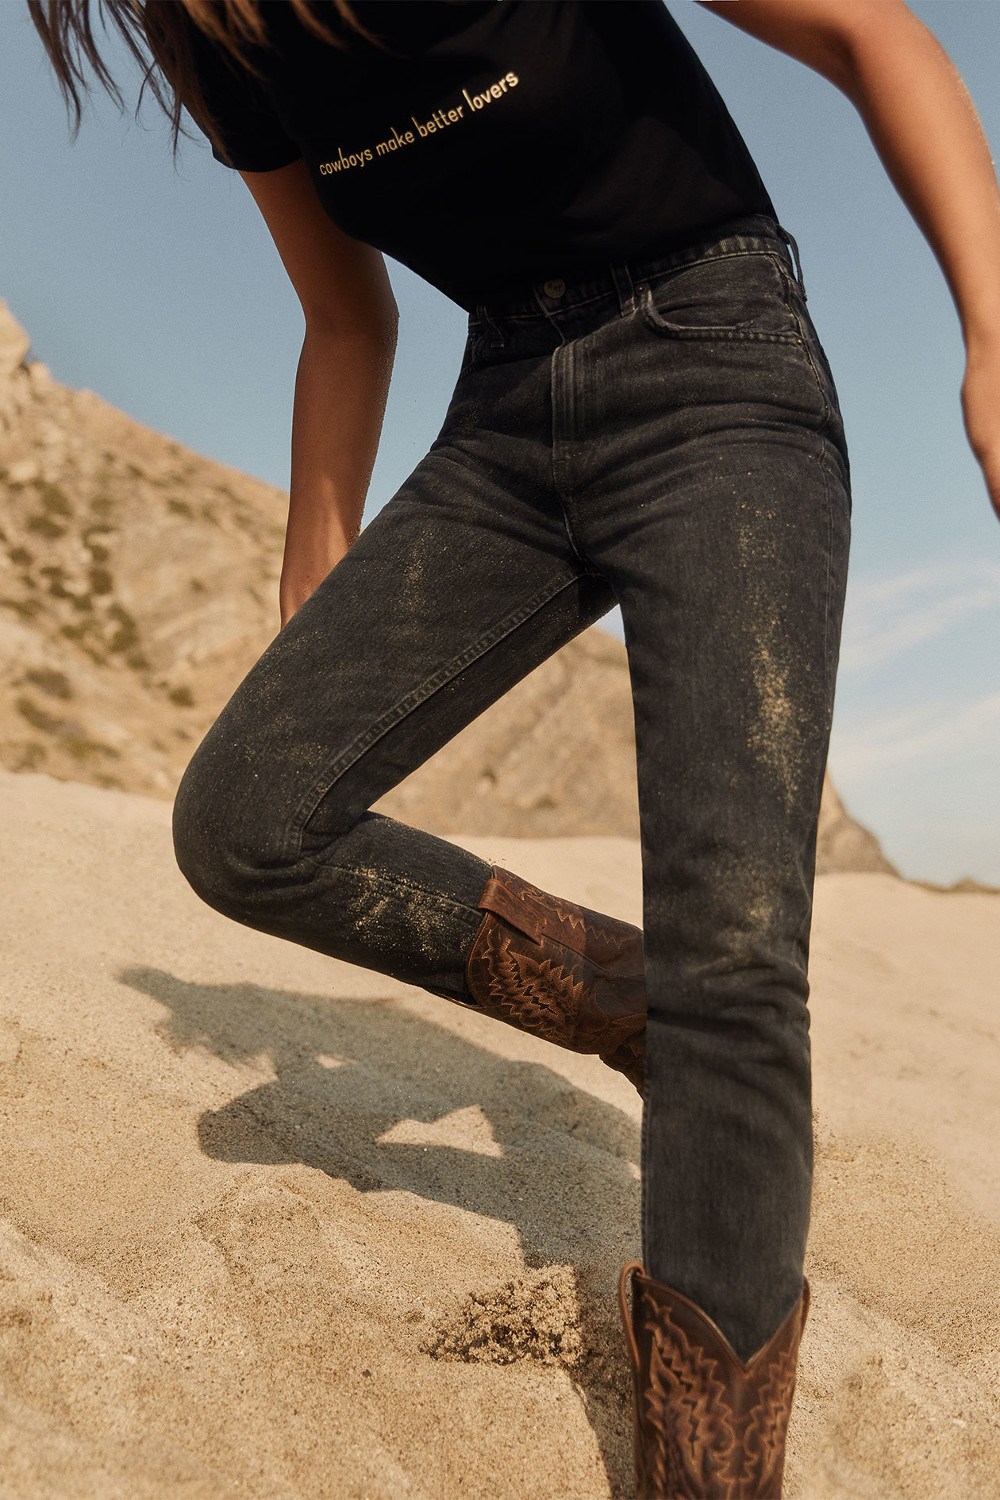 imagen 6 de Fall Ref Jeans, la nueva colección otoñal de Reformation.